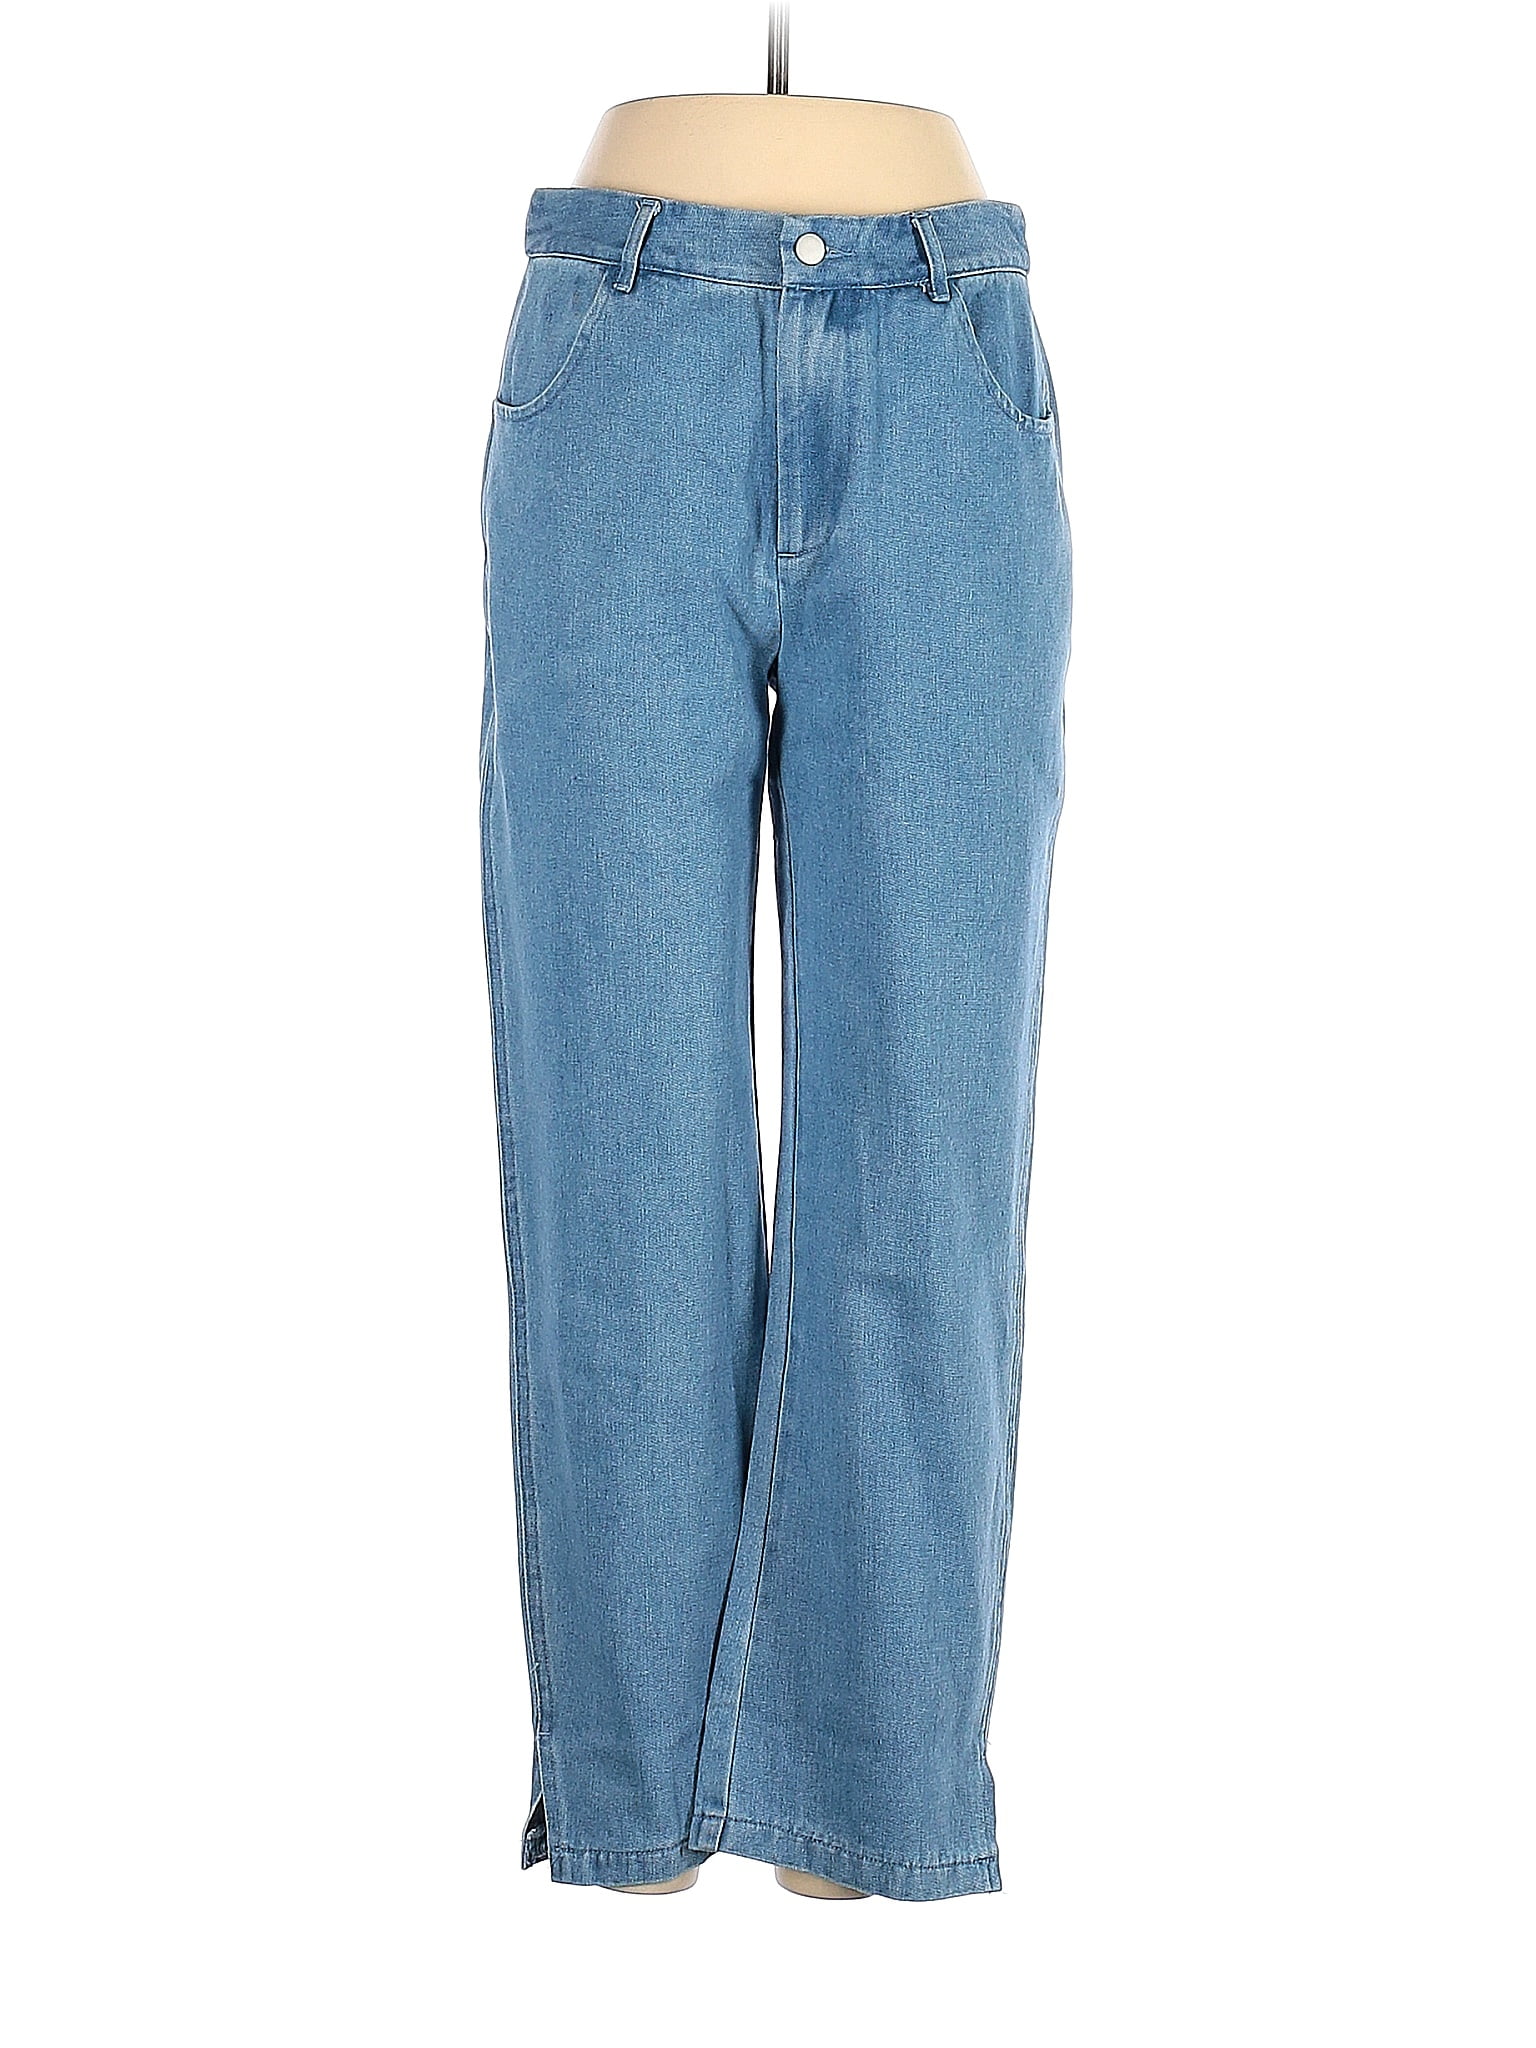 Strut & Bolt Blue Jeans Size M - 59% off | thredUP